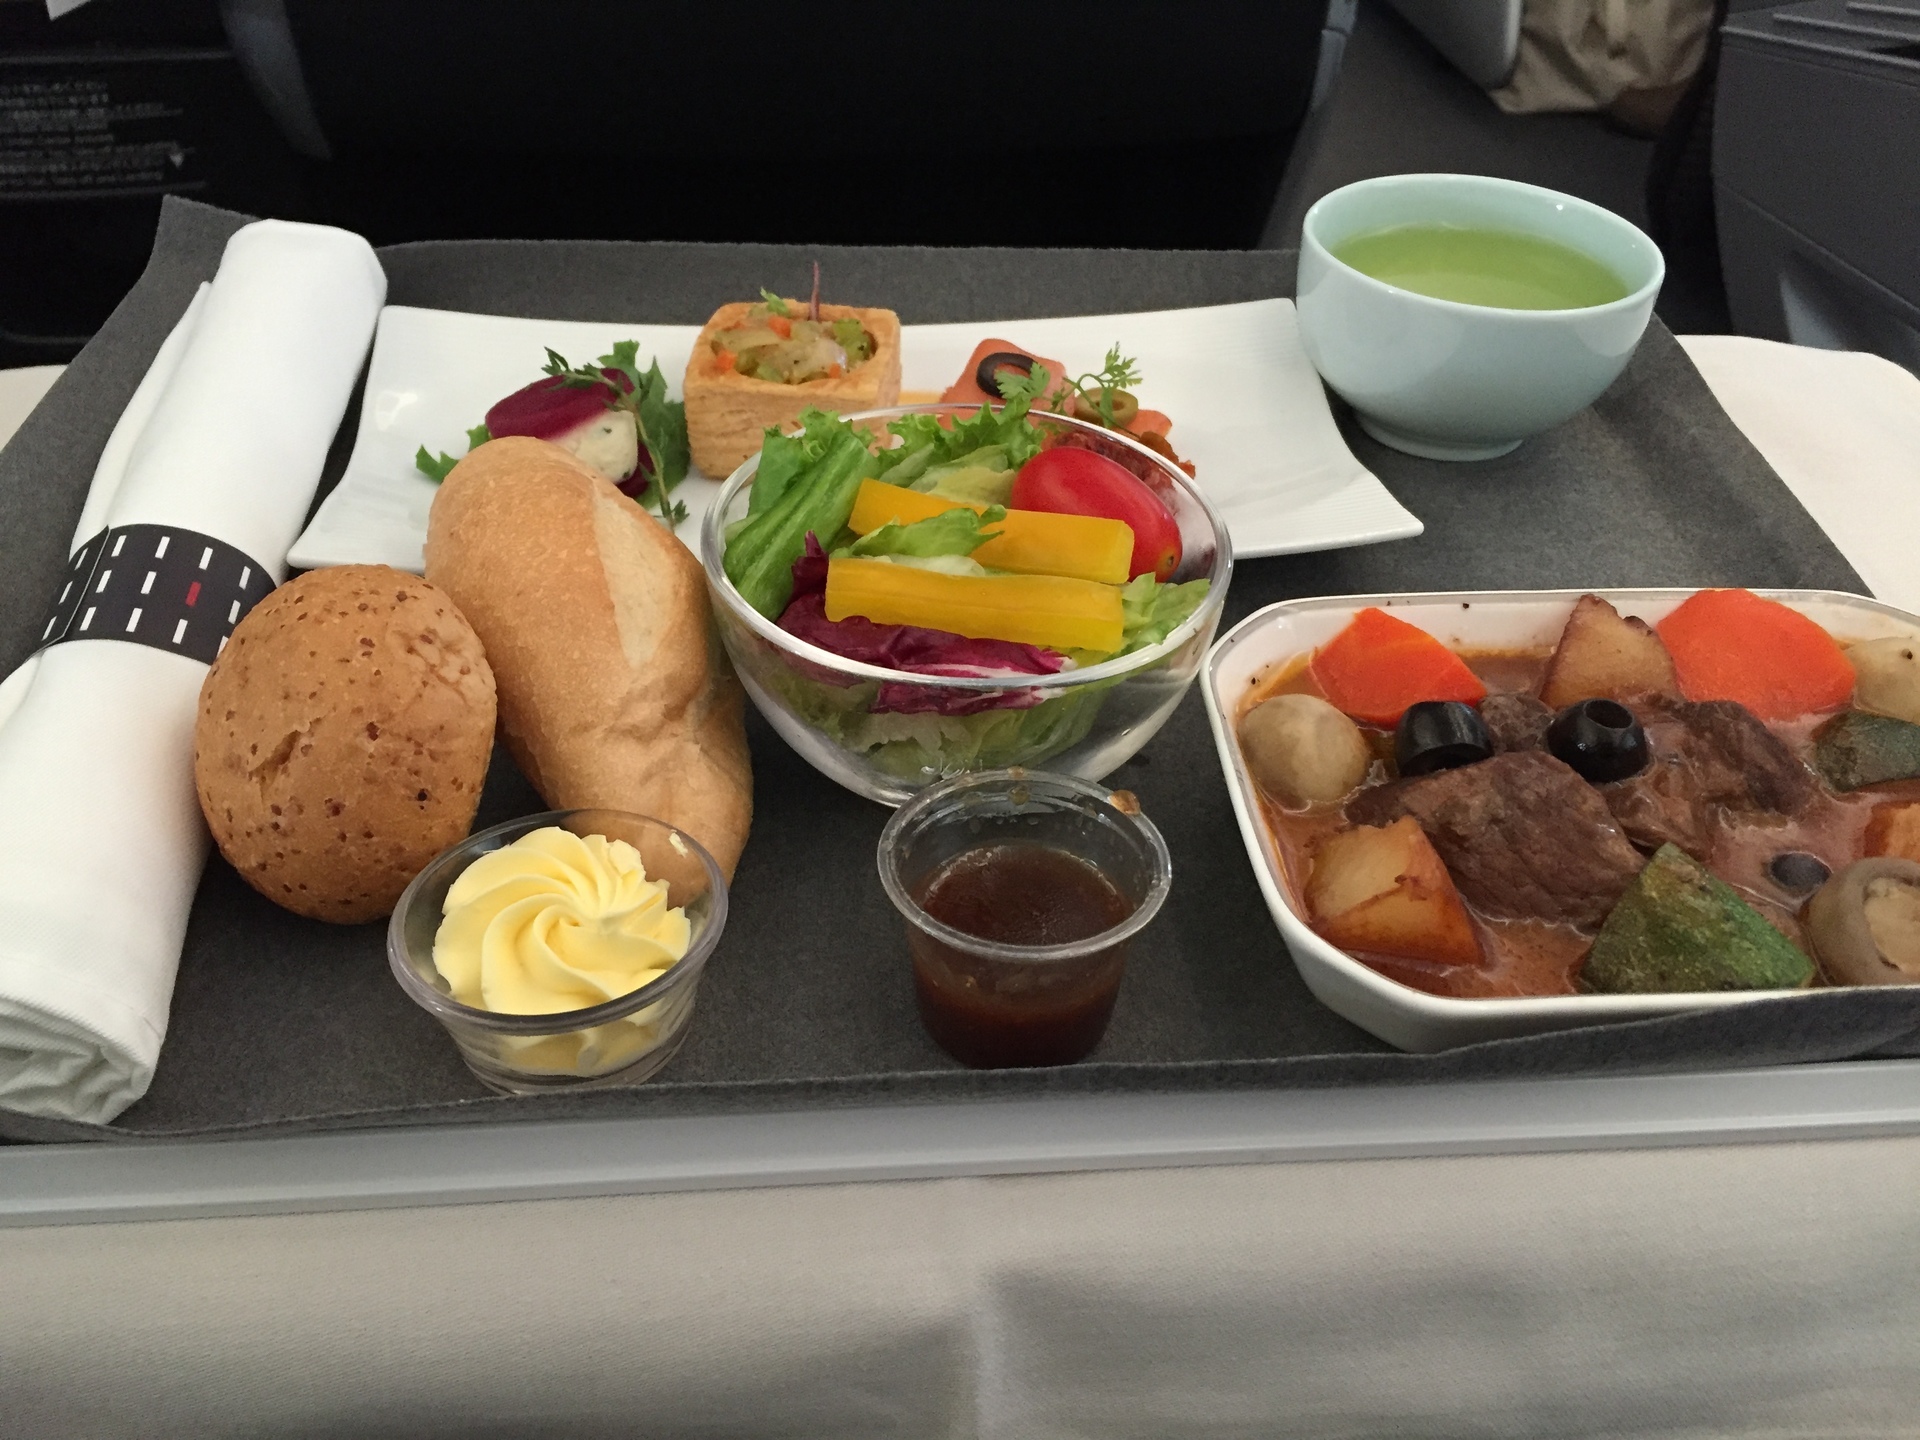 桃園国際空港 Tpe 関空 Kix のビジネスクラス機内食 です